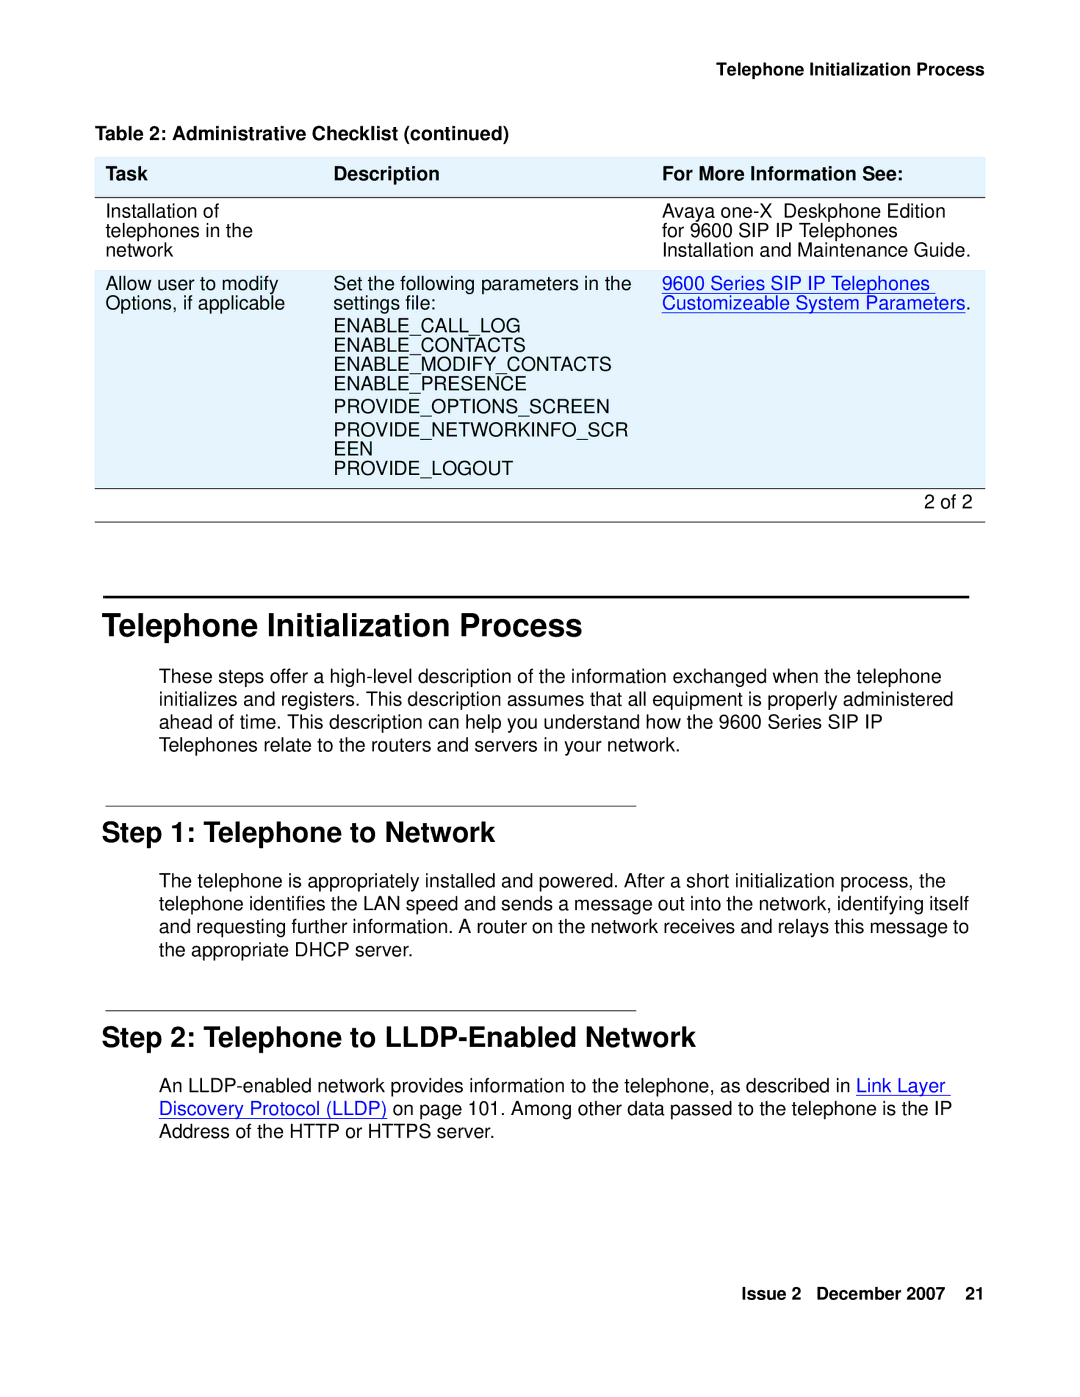 Avaya 9600 manual Telephone Initialization Process, Telephone to Network, Telephone to LLDP-Enabled Network 